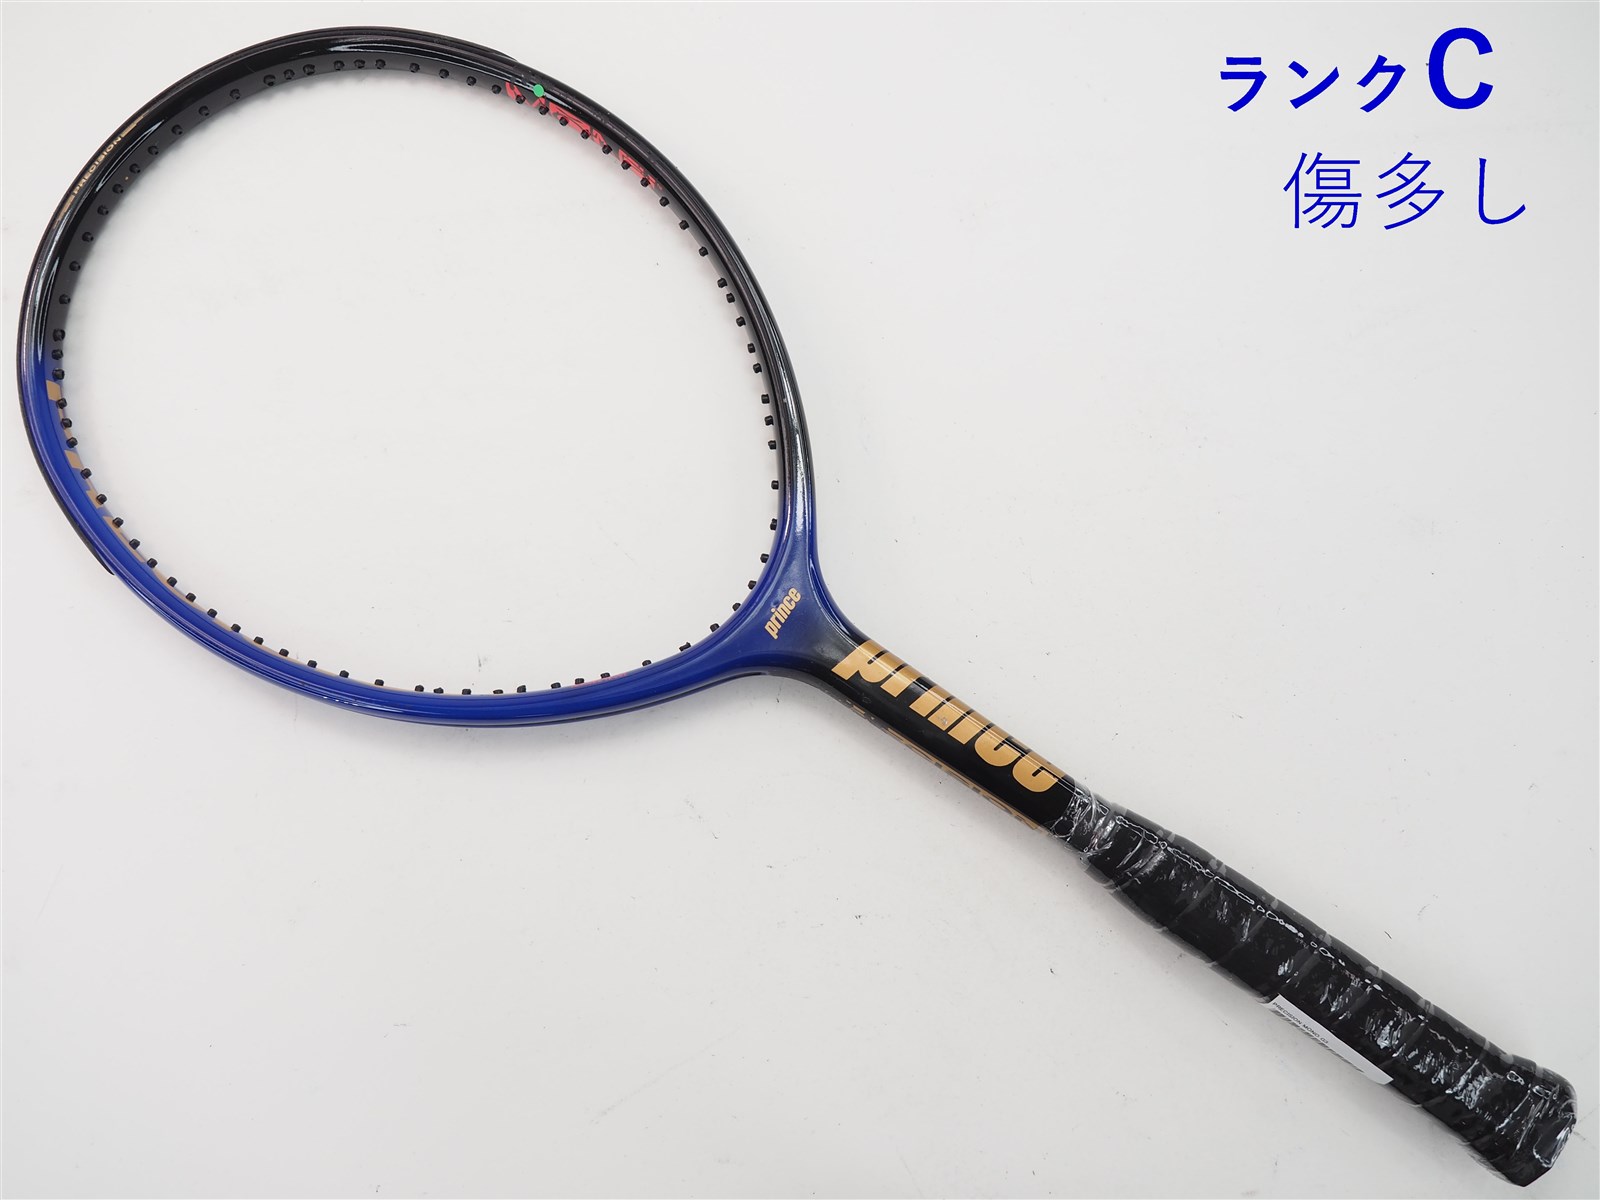 【中古】プリンス プレシジョン モノPRINCE PRECISION MONO(G3)【中古 テニスラケット】【送料無料】